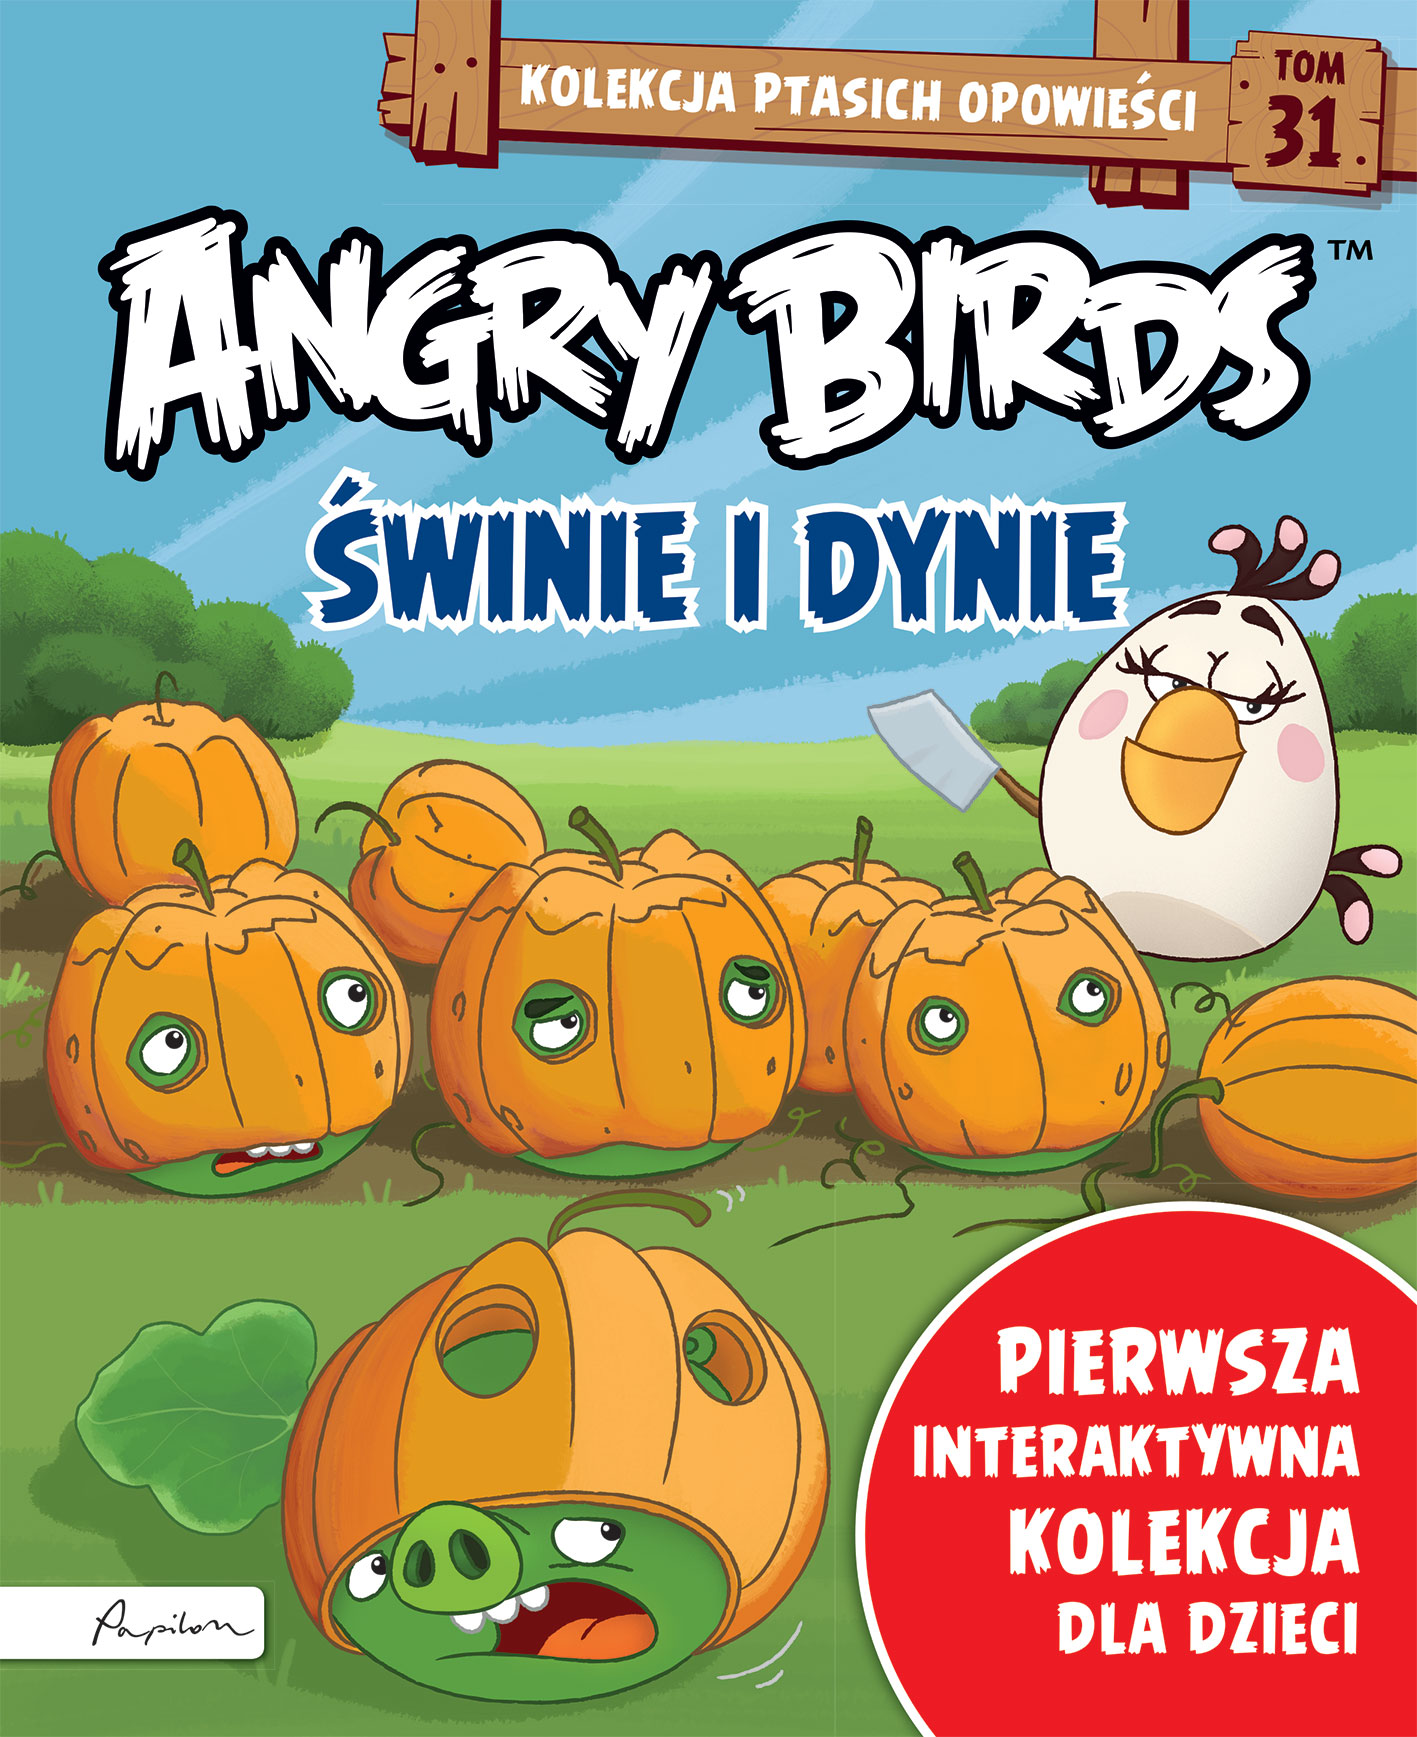 Angry Birds. Kolekcja ptasich opowieści 31. Świnie i dynie. 